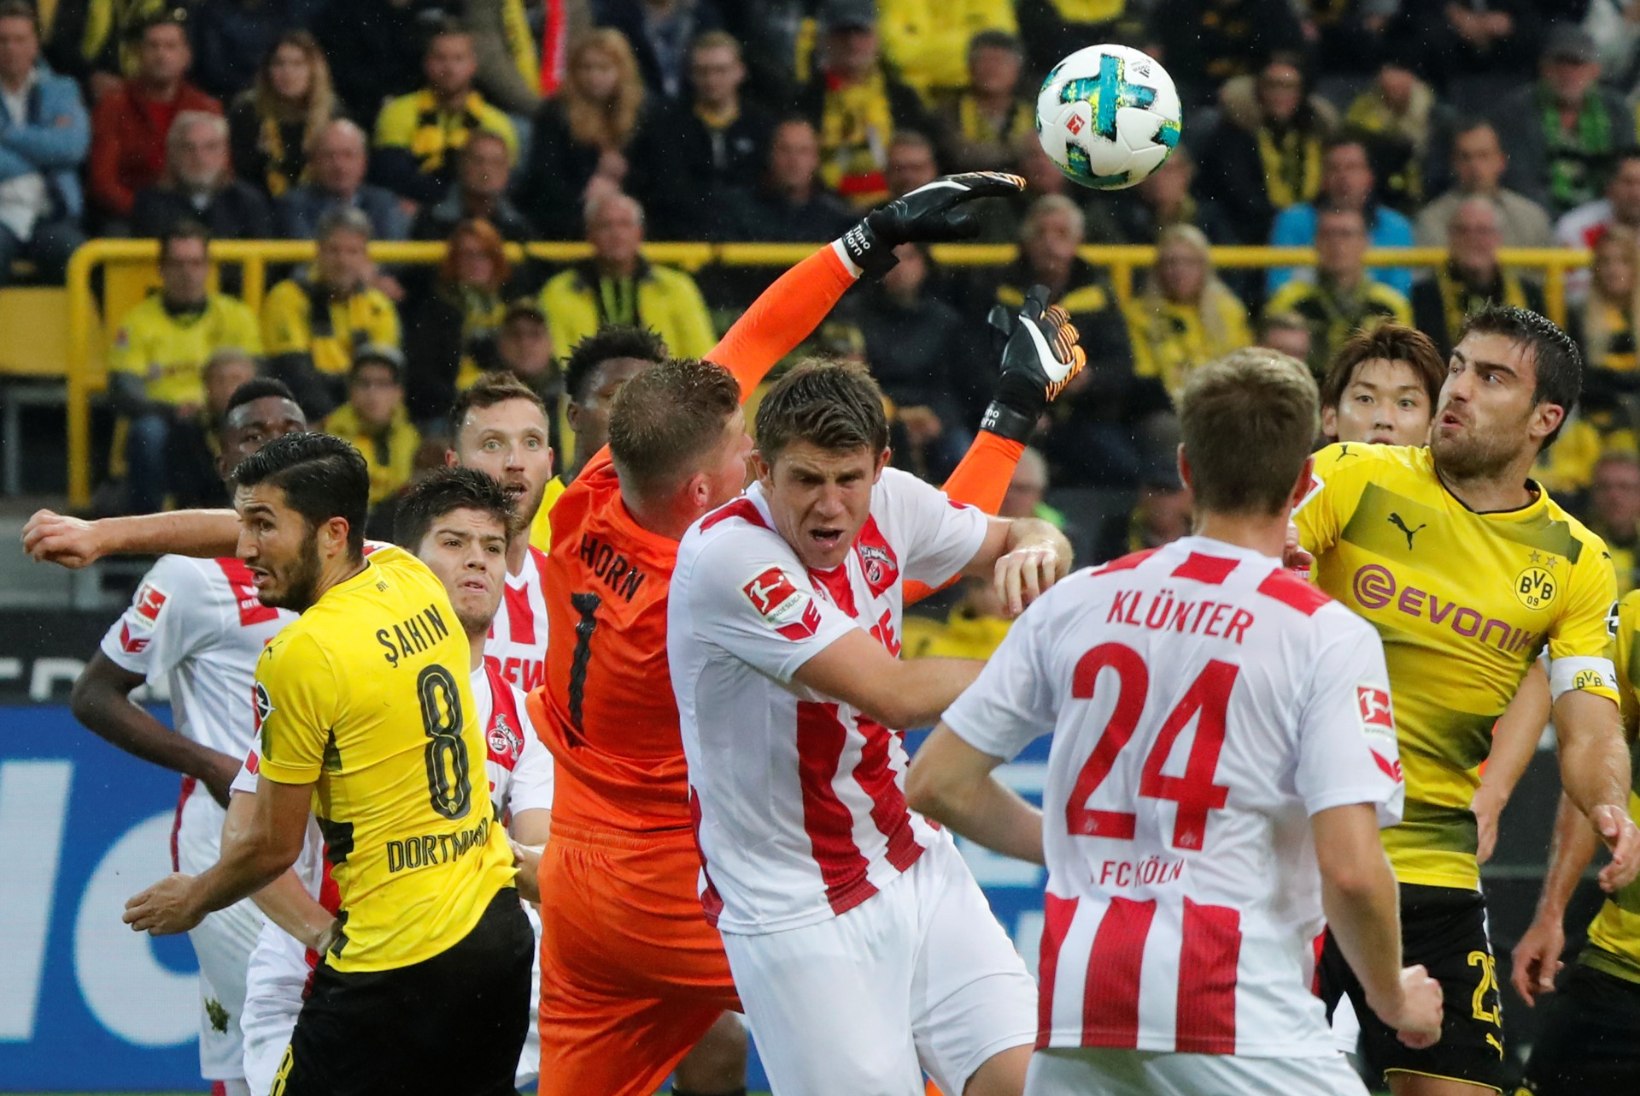 Dortmundilt 0:5 kolaka saanud Köln nõuab videokohtuniku otsuse tõttu kordusmängu 